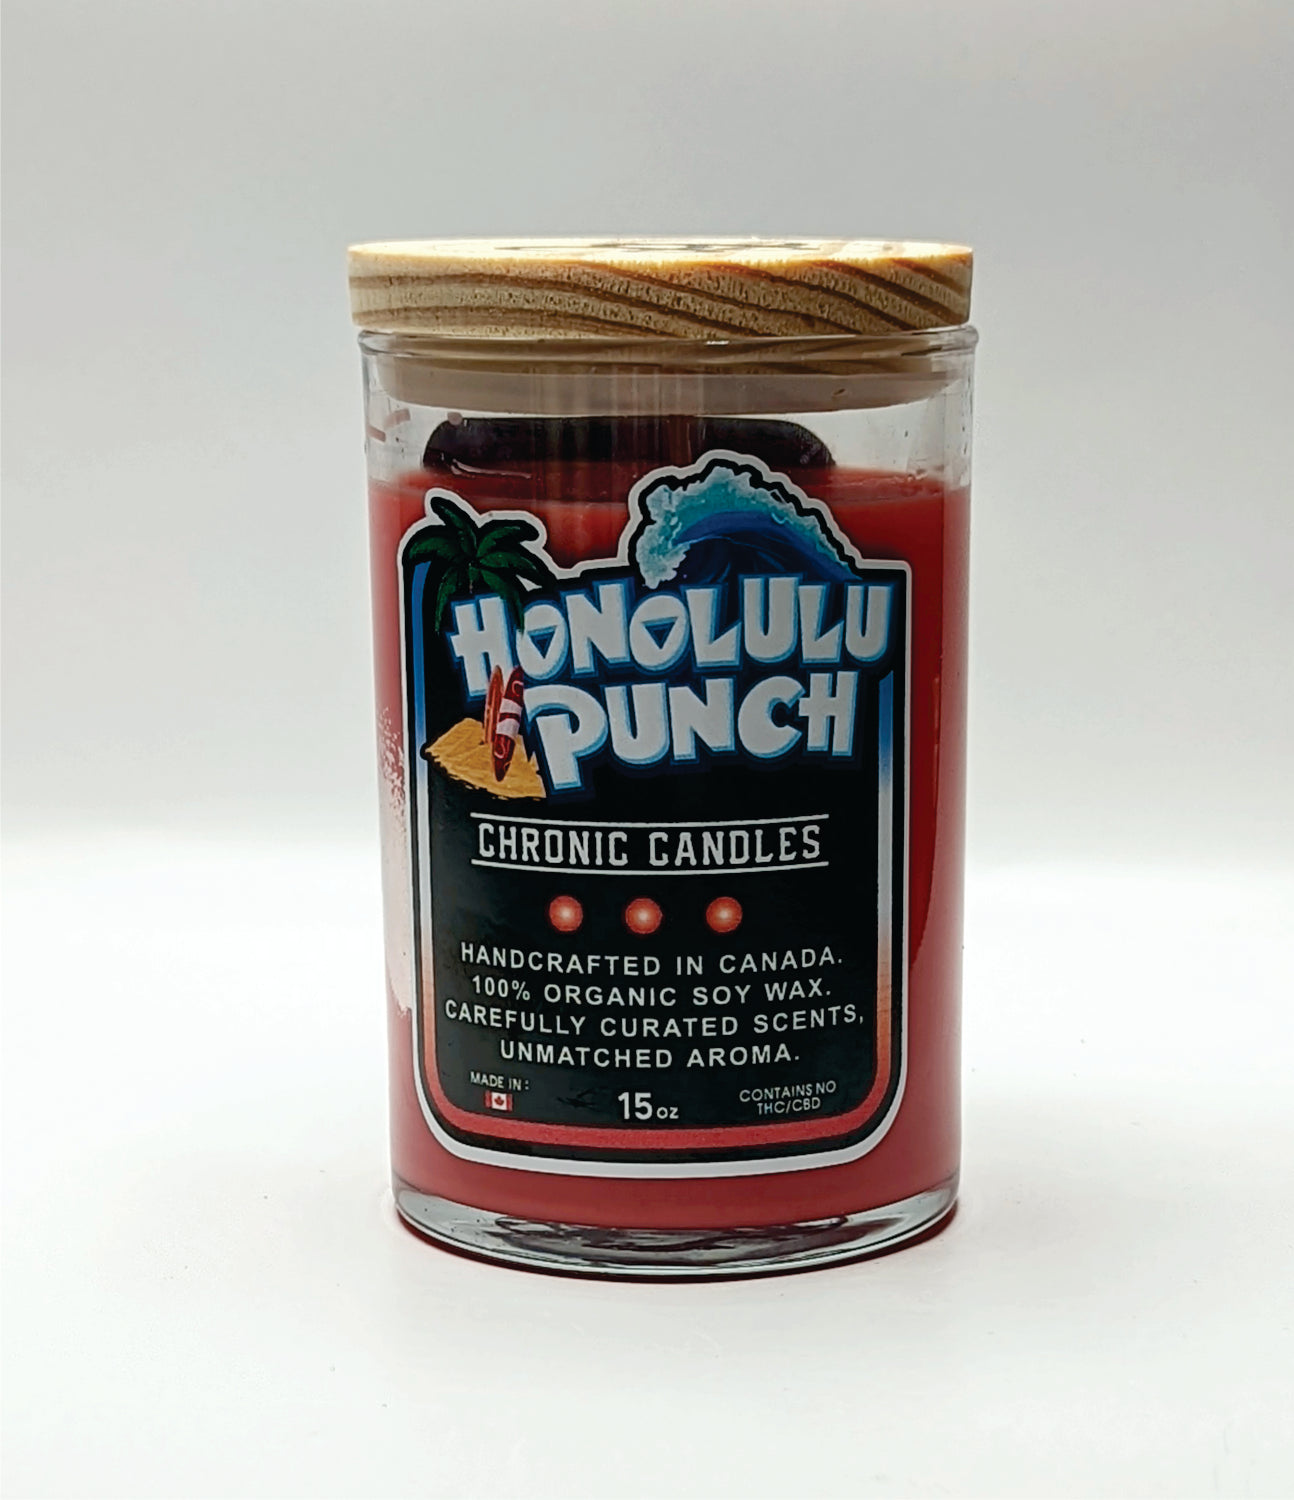 Honolulu Punch - 15oz Chronic Candle